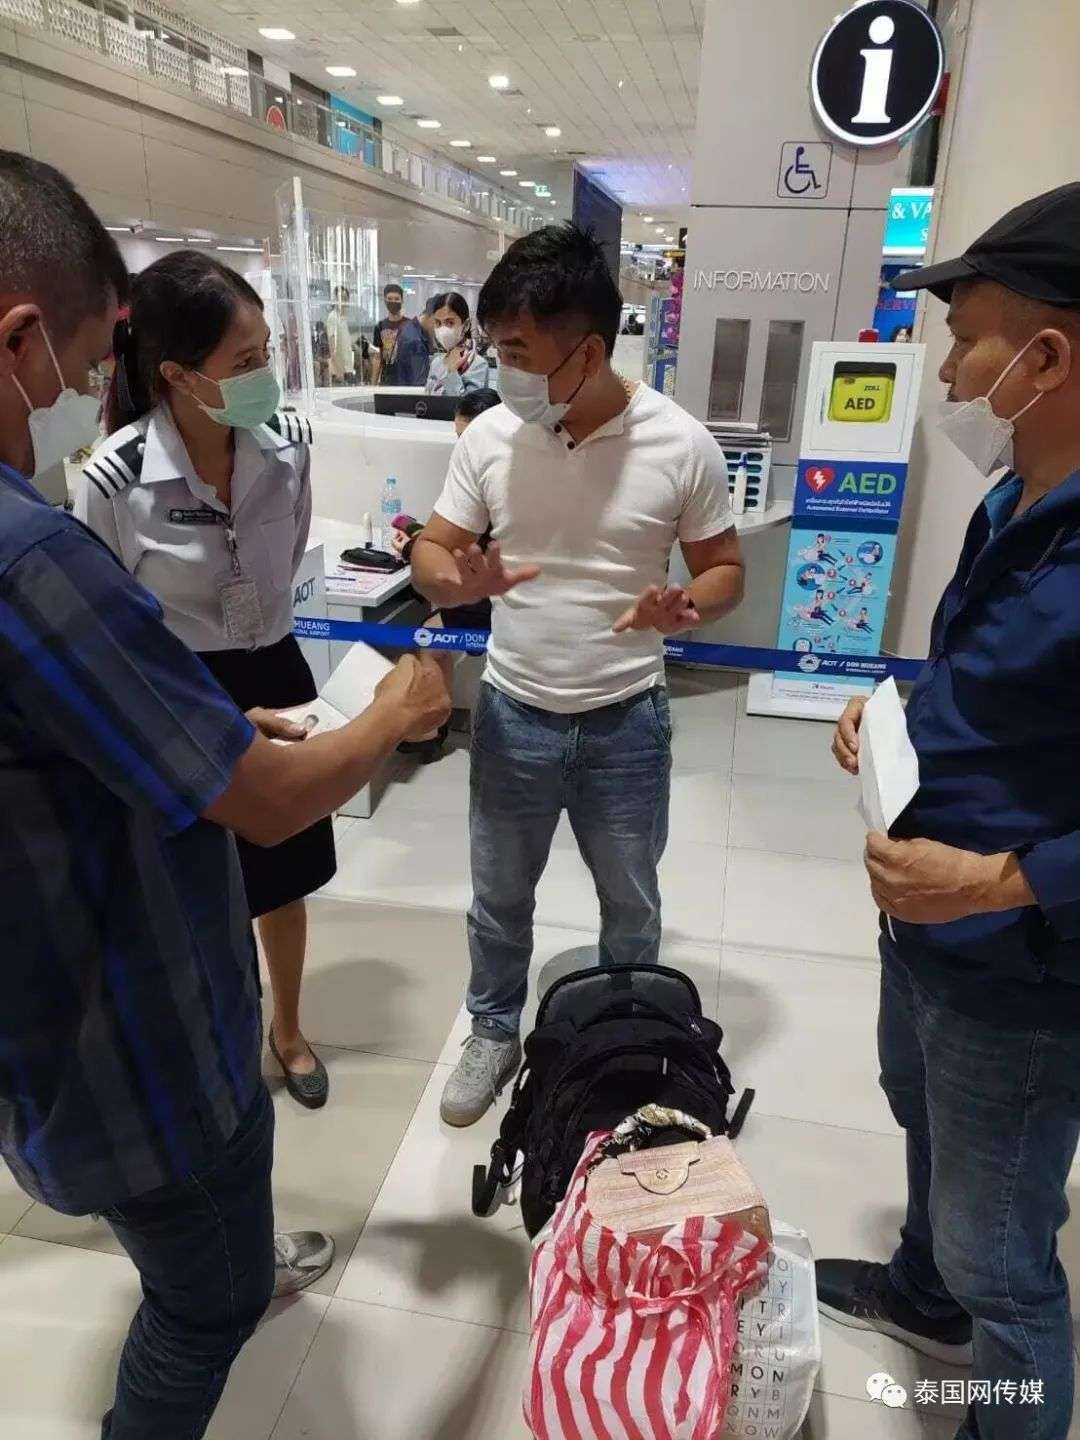 中国男子在泰国机场偷窃同胞价值上百万LV包被捕！还将其身份证、信用卡等物品扔进垃圾桶！